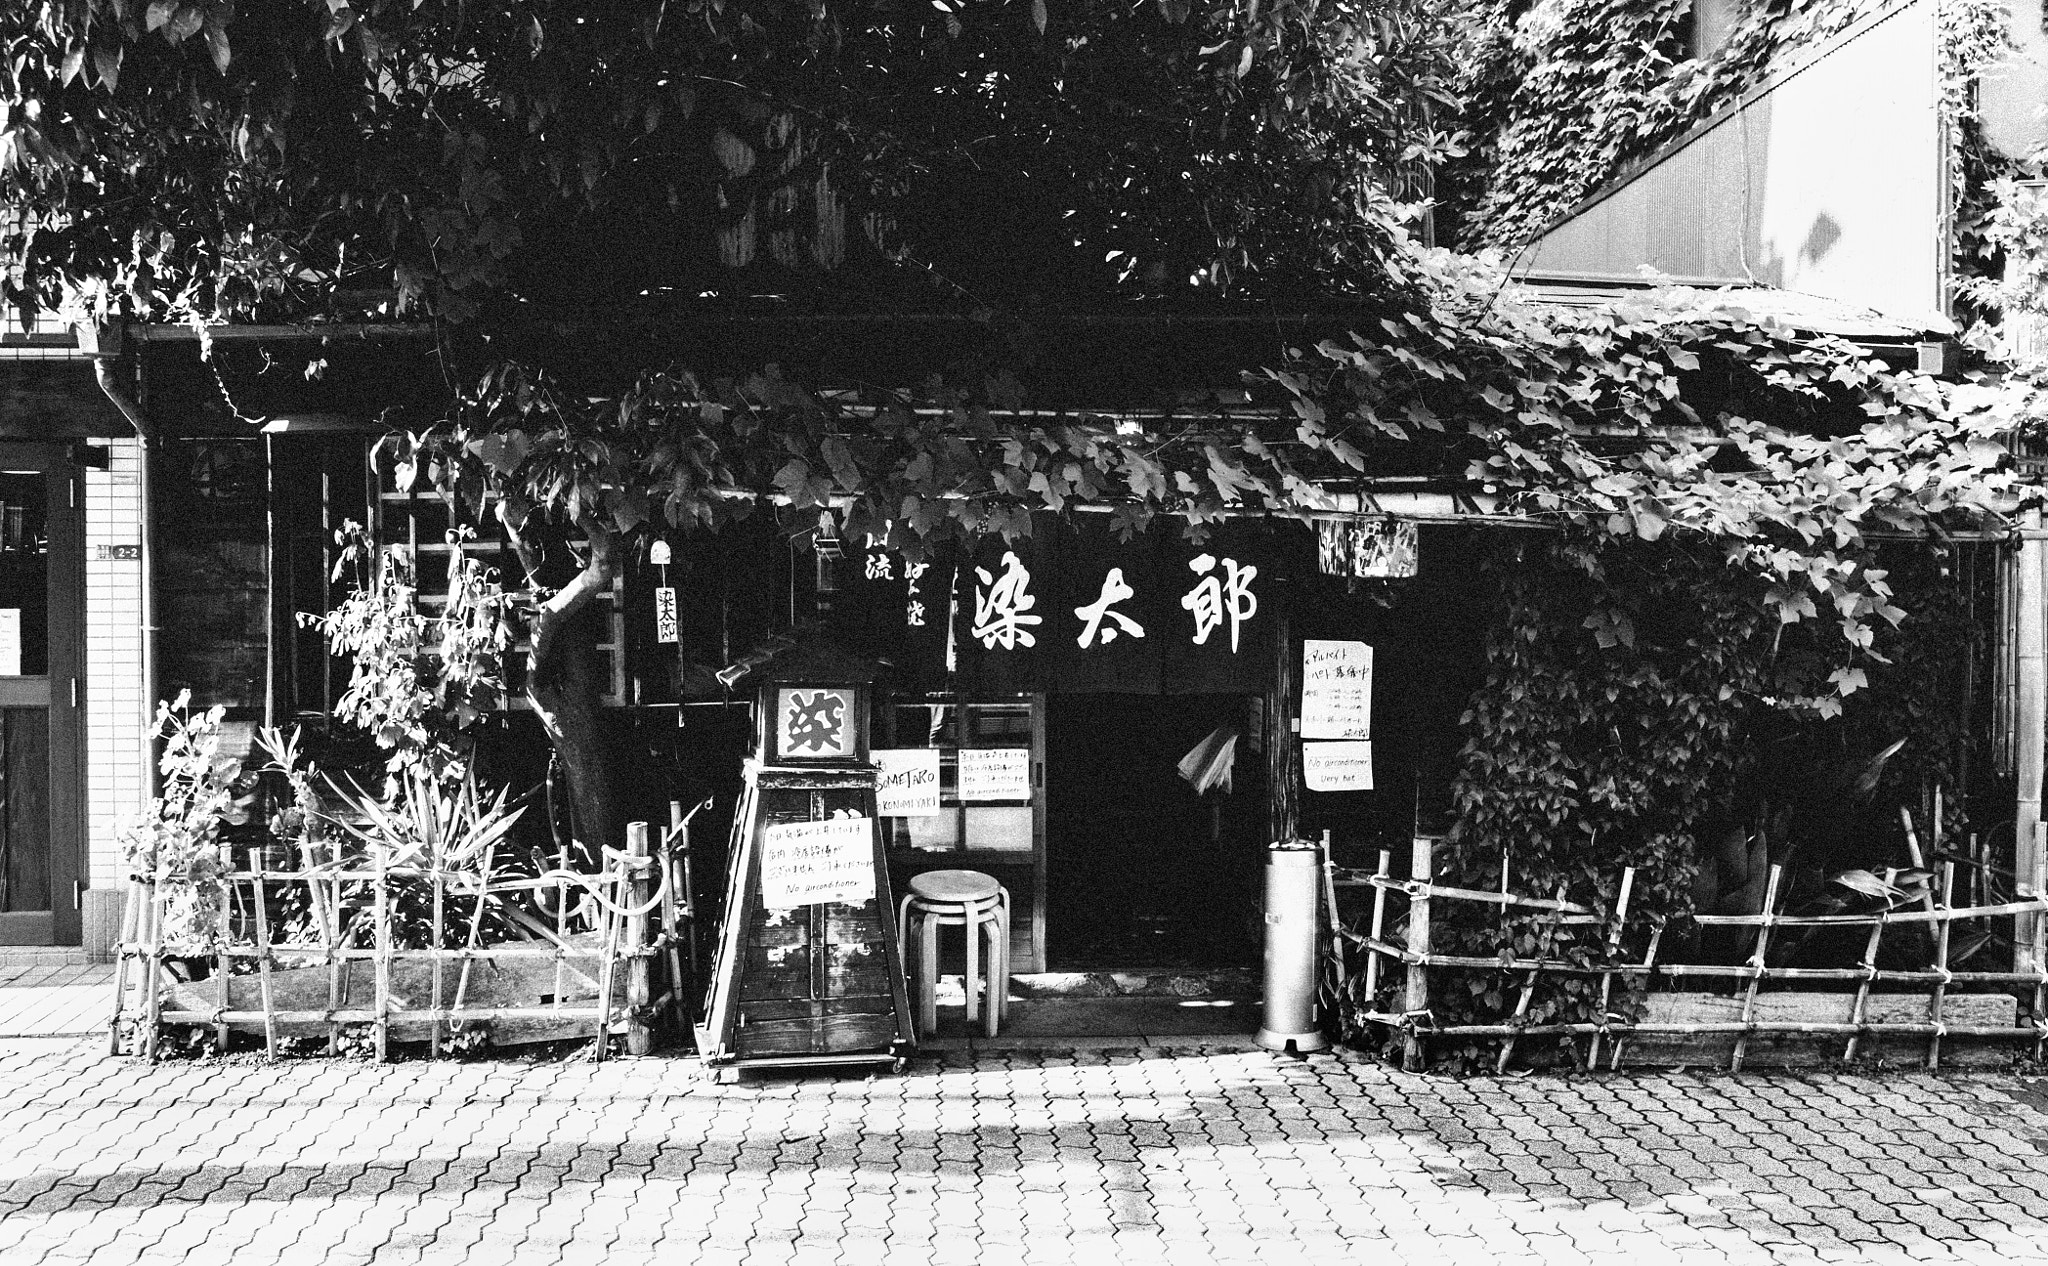 Pentax K-r sample photo. Okonomiyaki photography